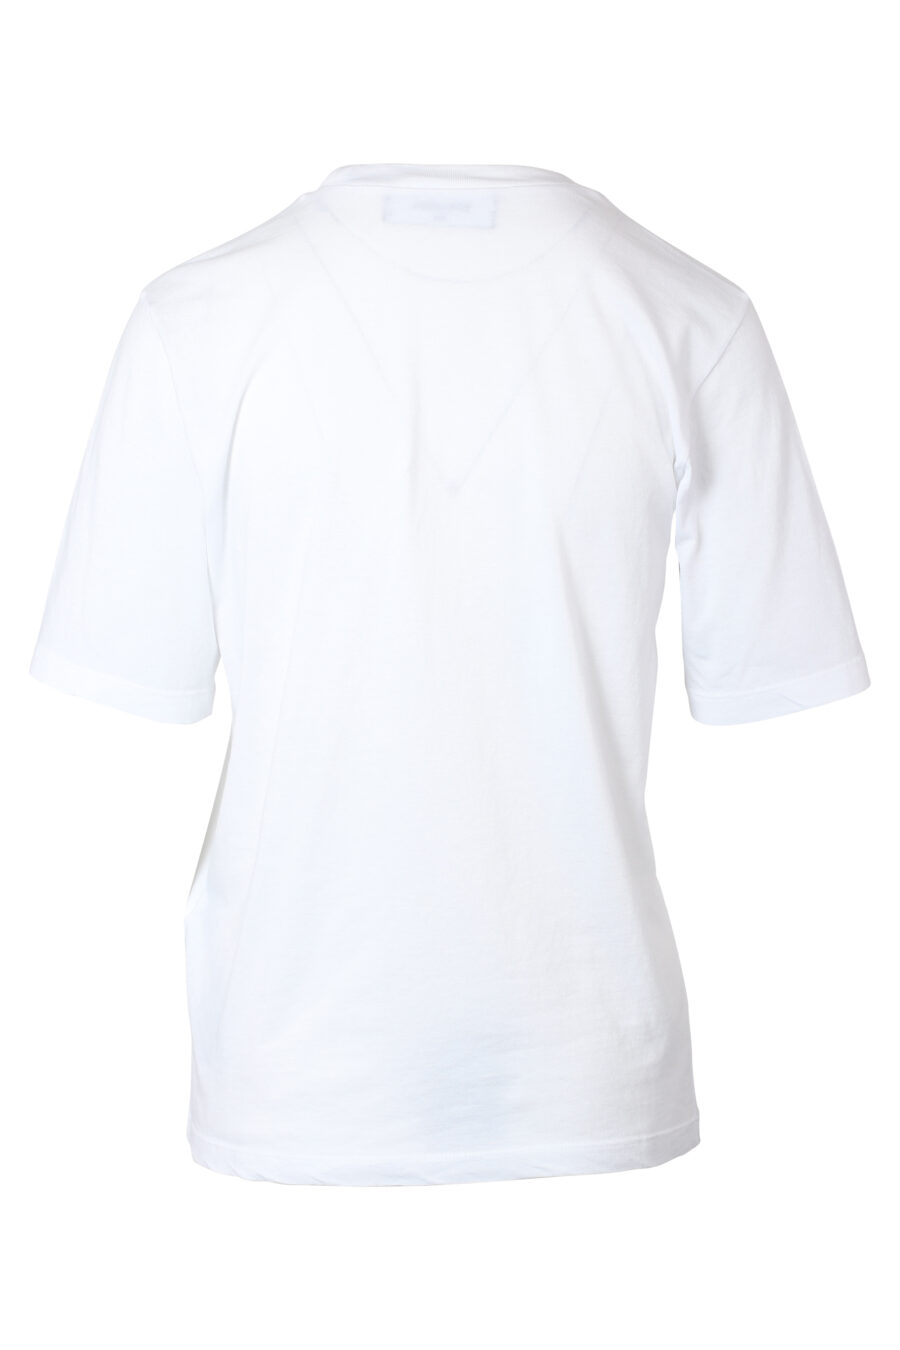 White T-shirt with multicoloured maxilogo - IMG 9782